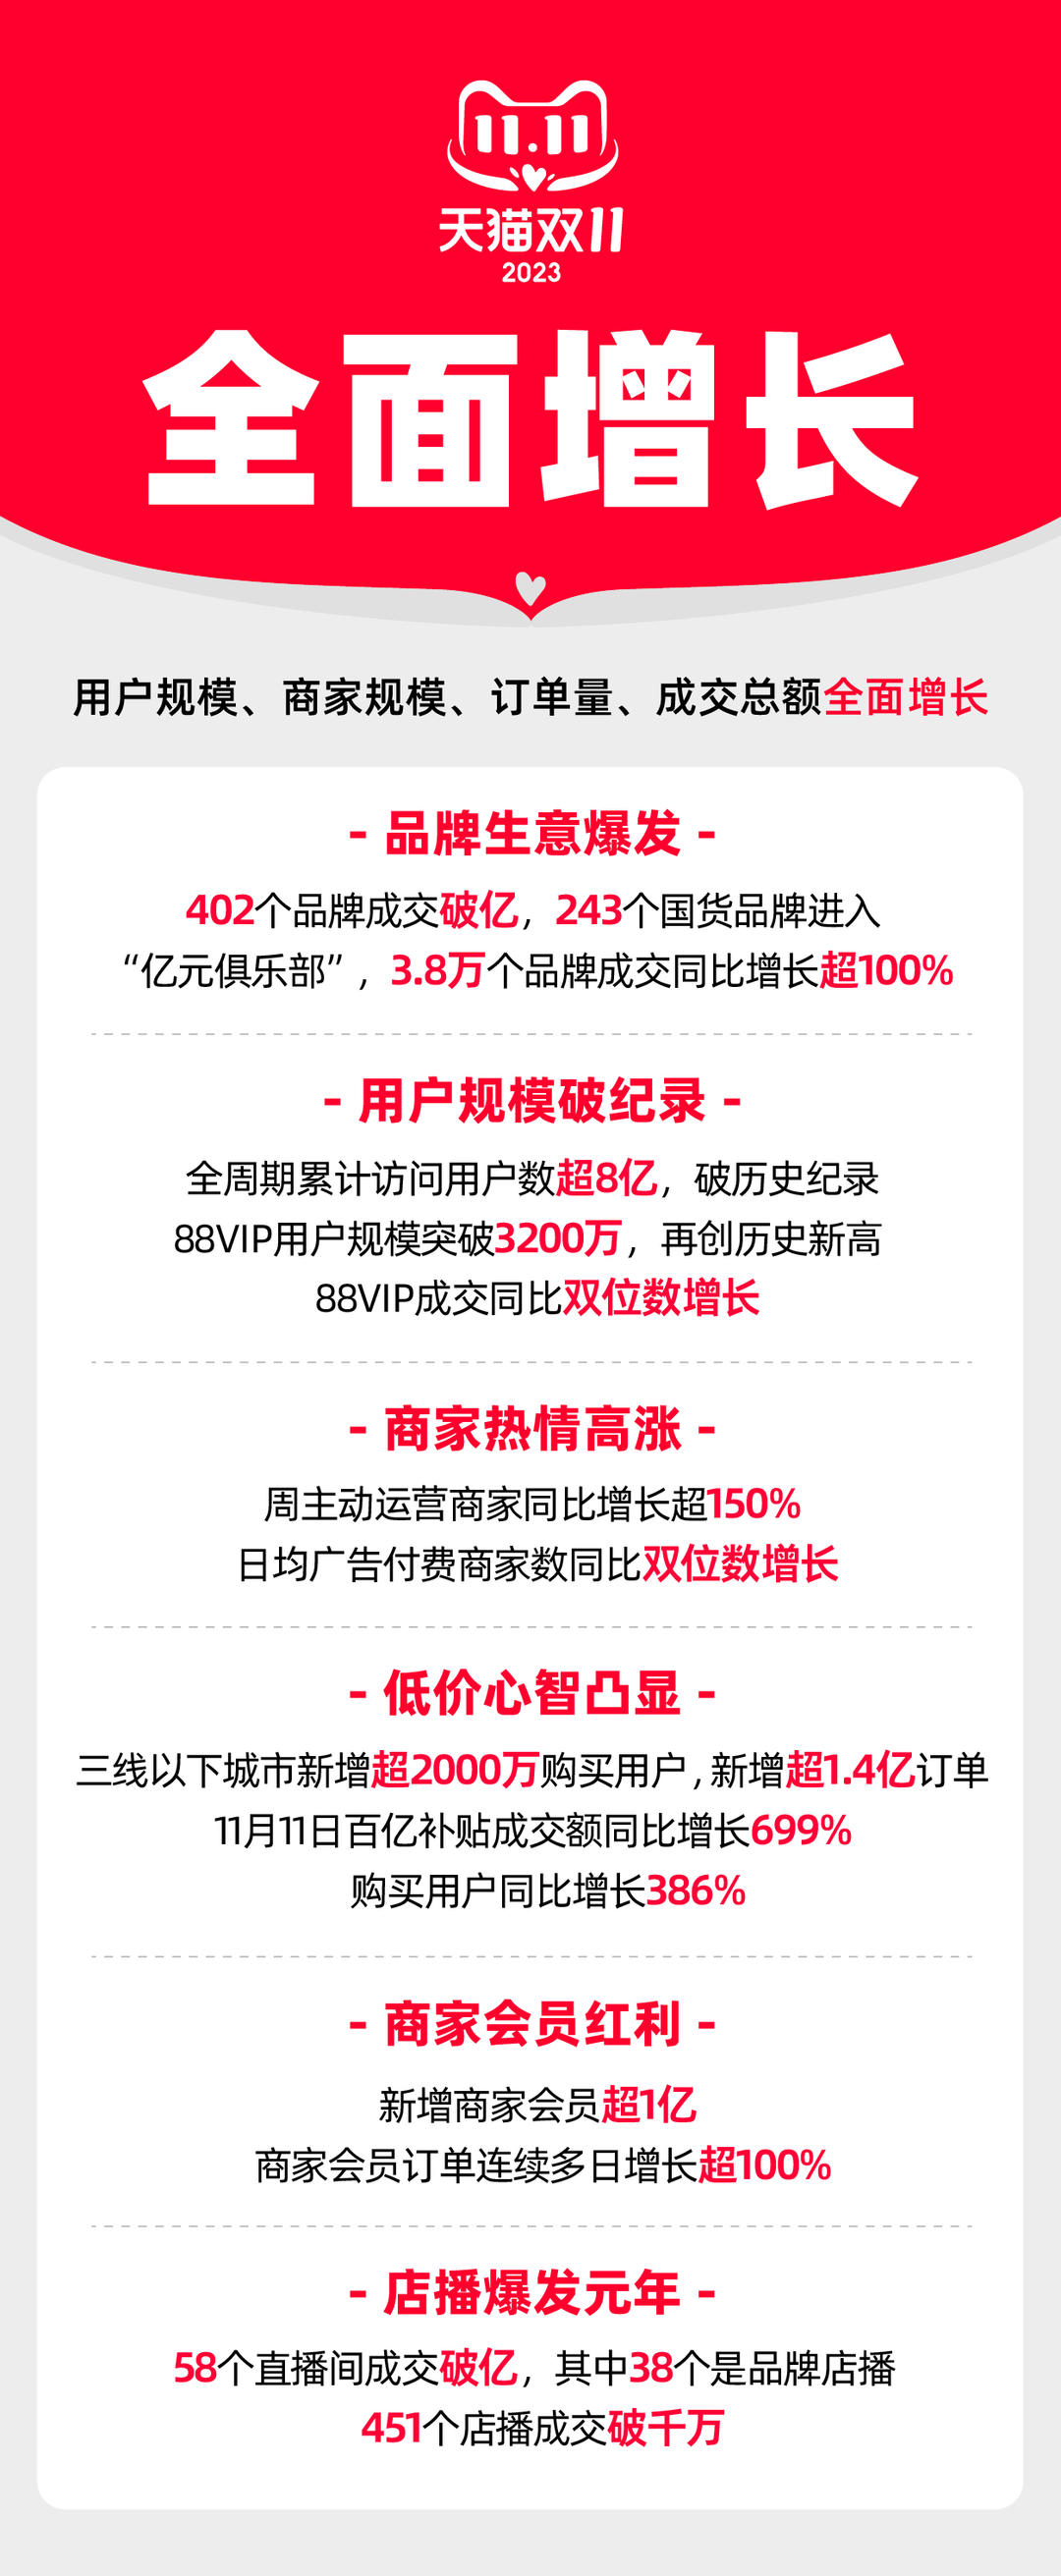 双11成绩单公布天猫402个品牌成交破亿京东近2万个品牌成交额增长超3